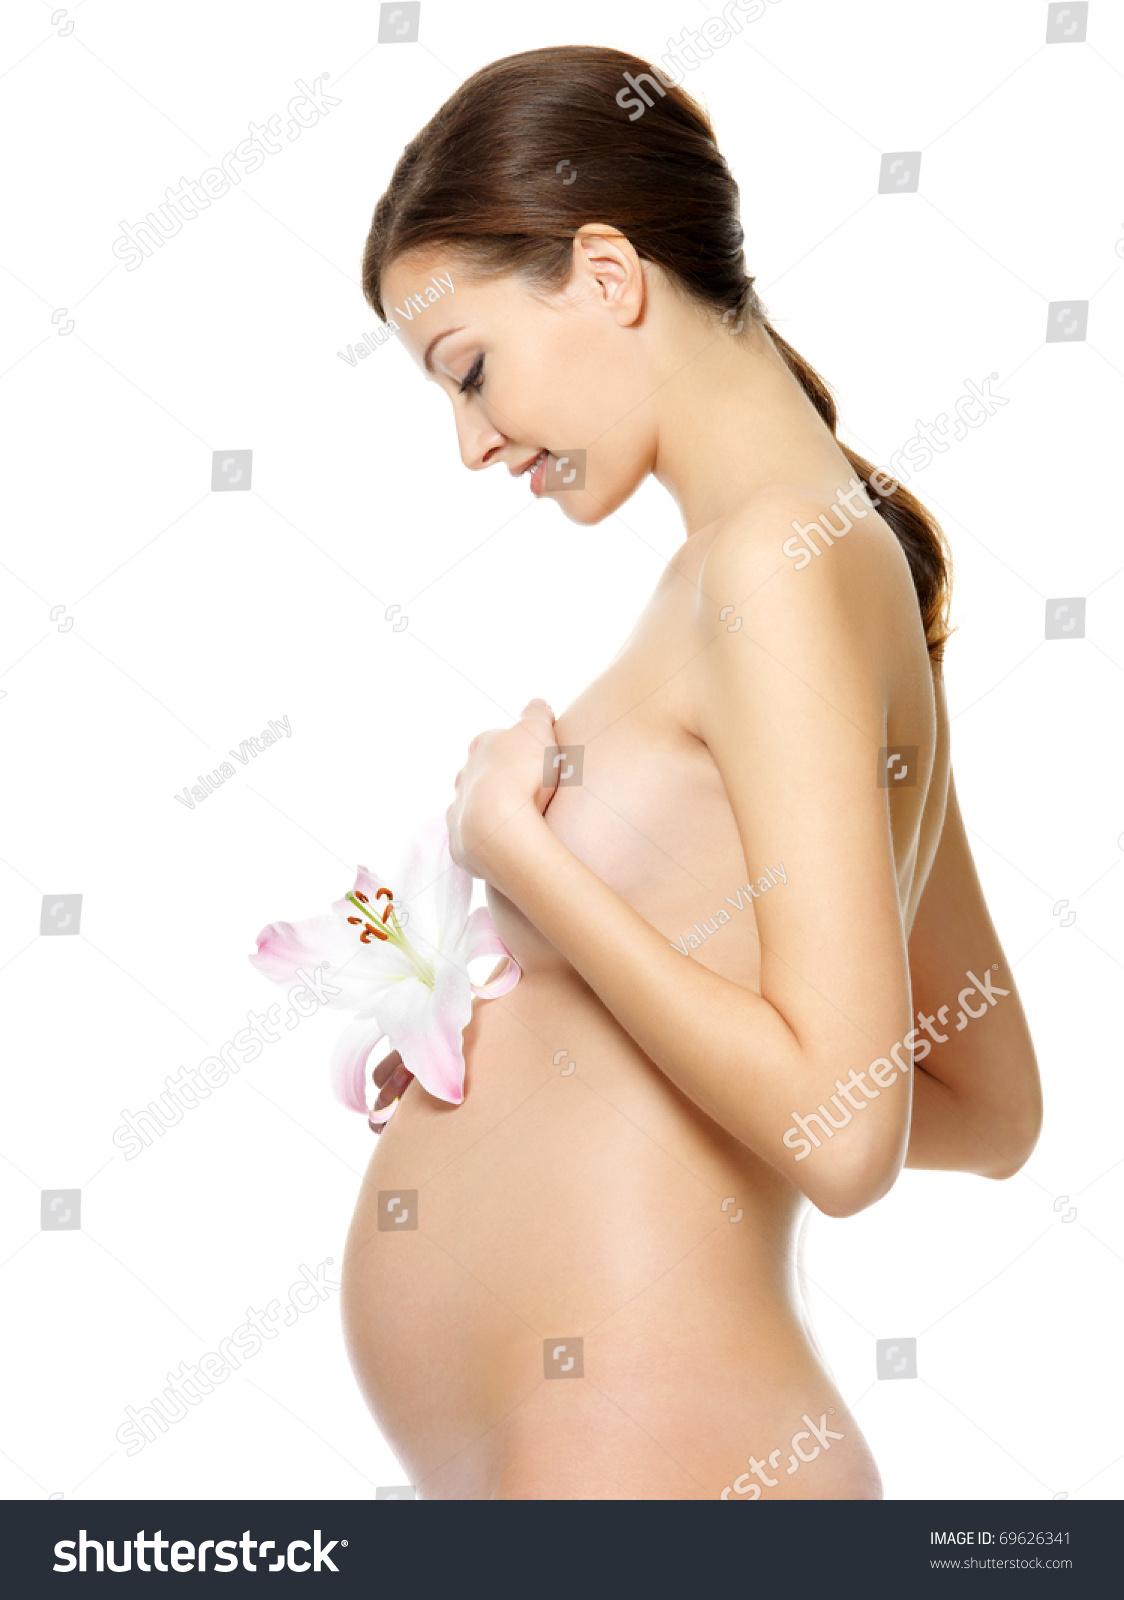 Naked Pregnant Women 11